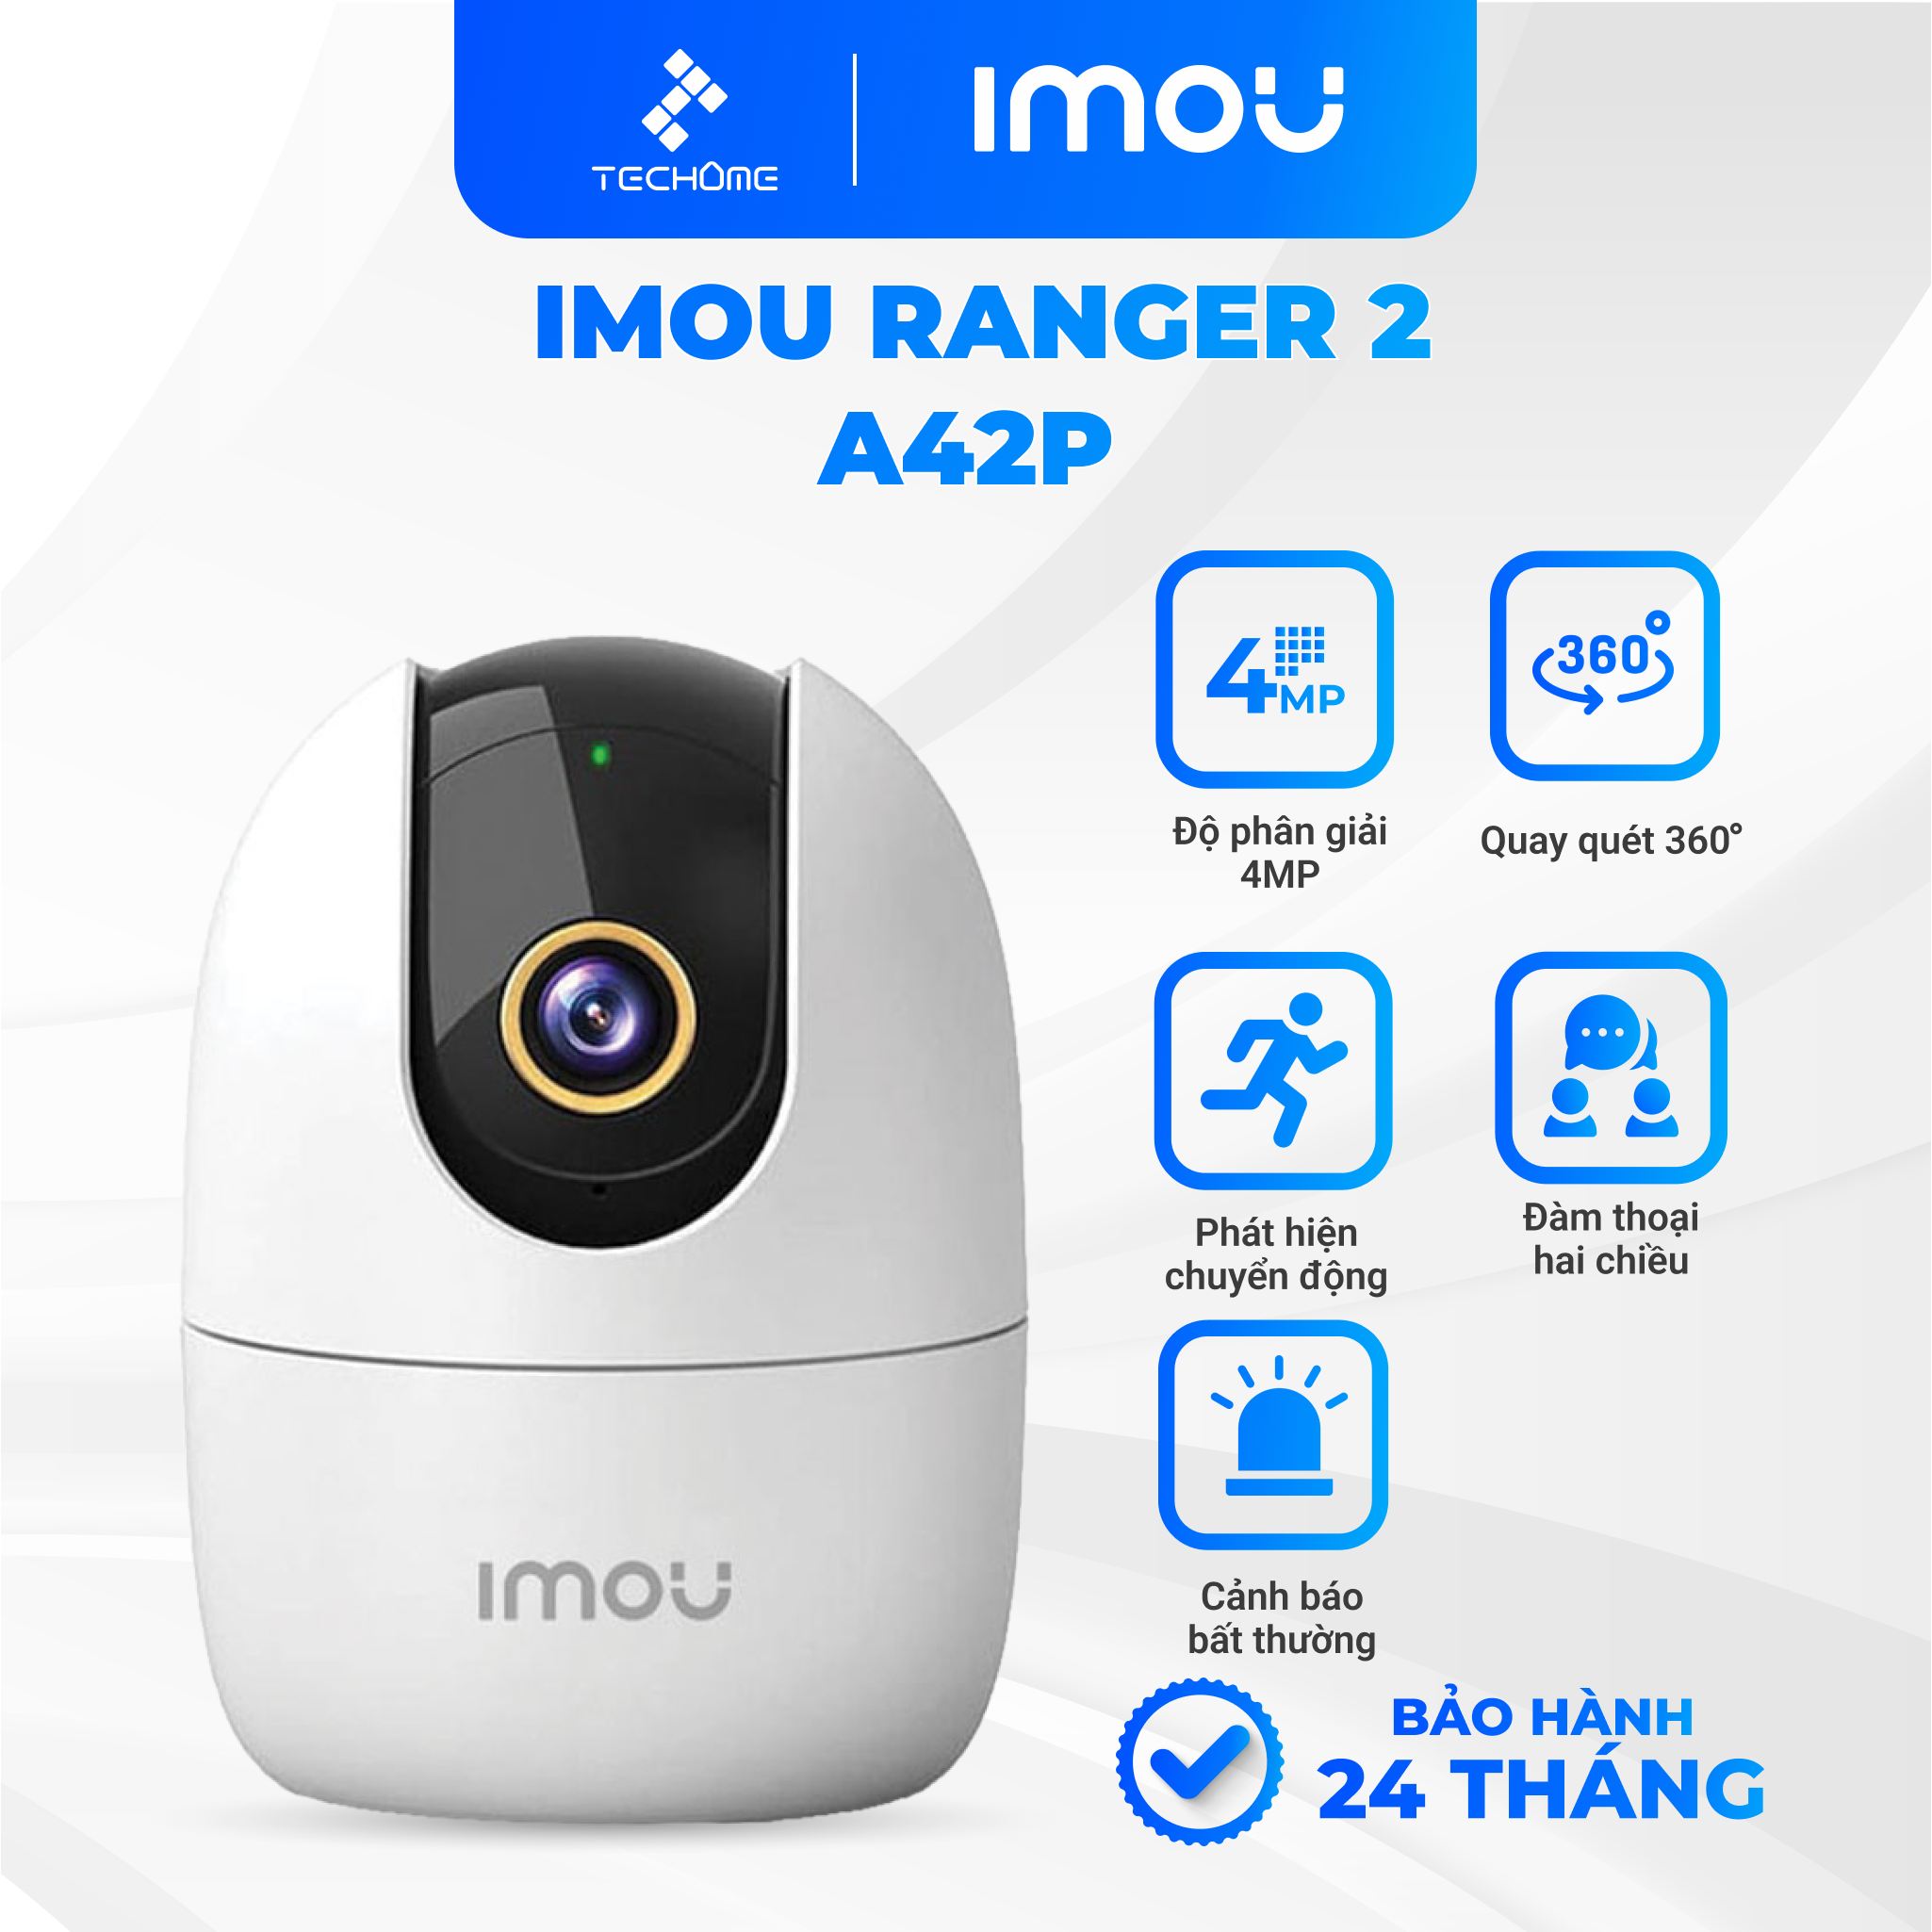 Camera Wifi Imou Ranger 2 A42P 4MP dùng trong nhà đàm thoại hai chiều, xoay 360 độ, cảnh báo thông minh - Techome